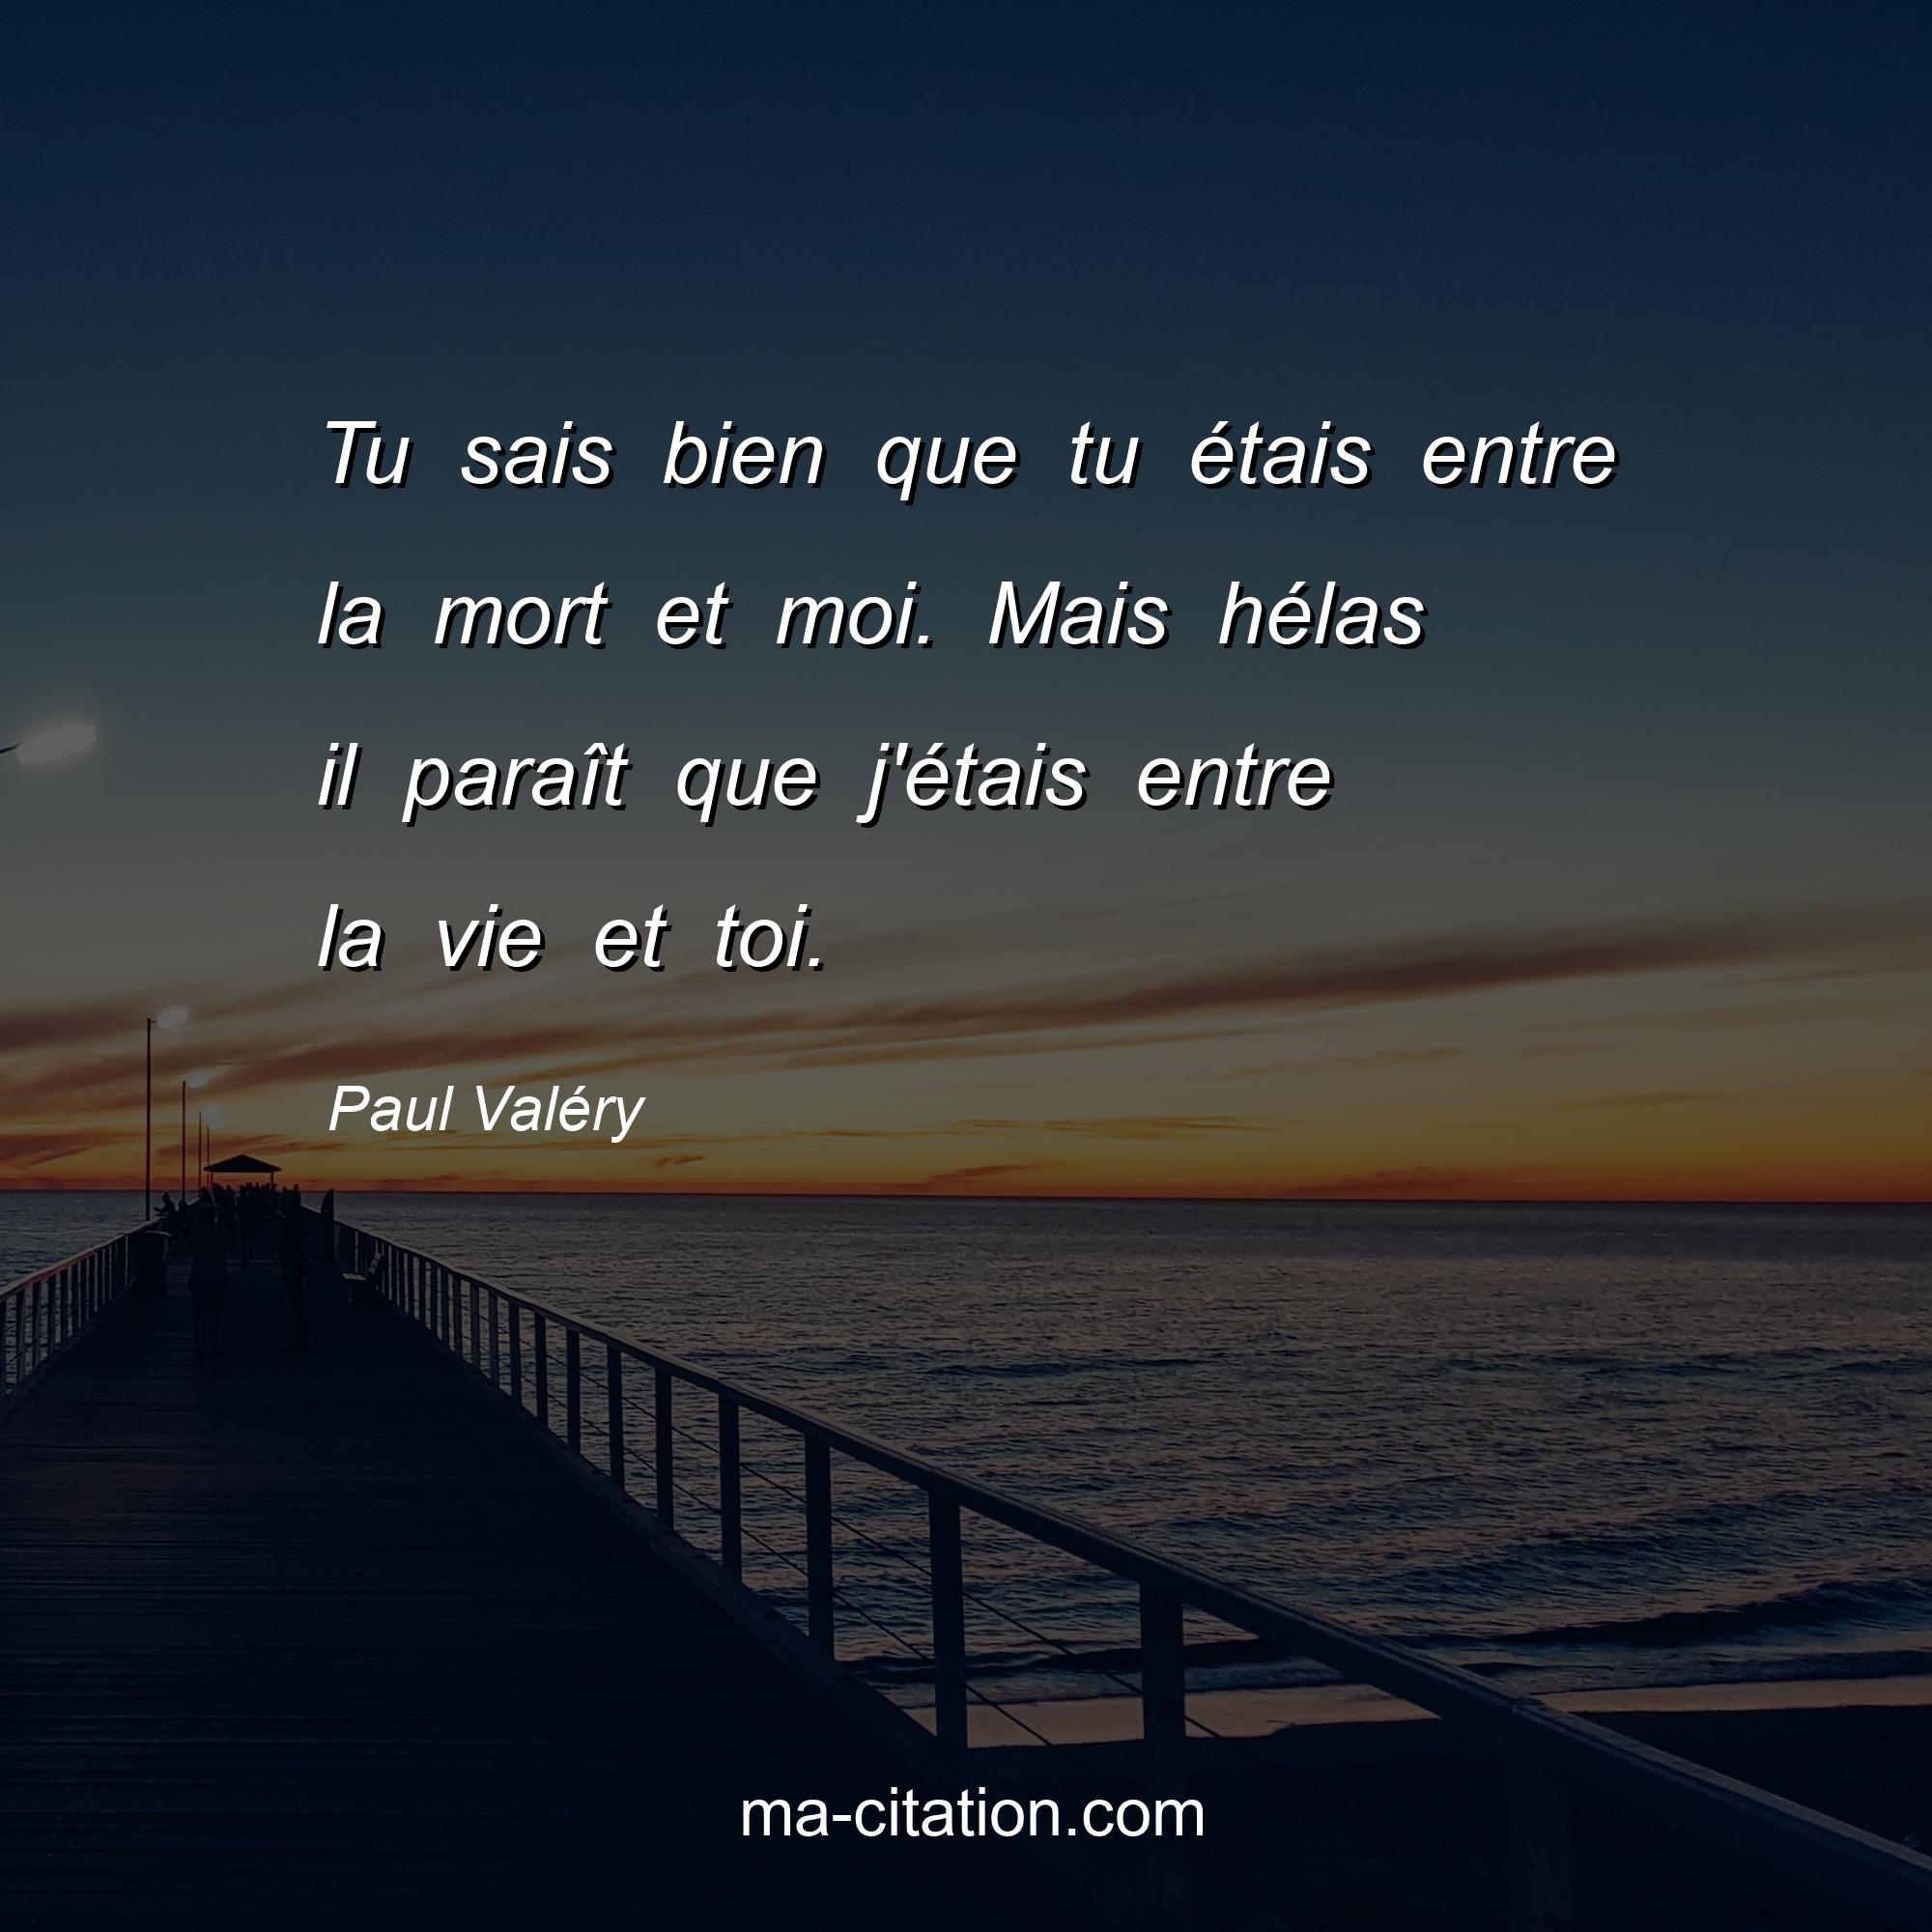 Paul Valéry : Tu sais bien que tu étais entre la mort et moi. Mais hélas il paraît que j'étais entre la vie et toi.